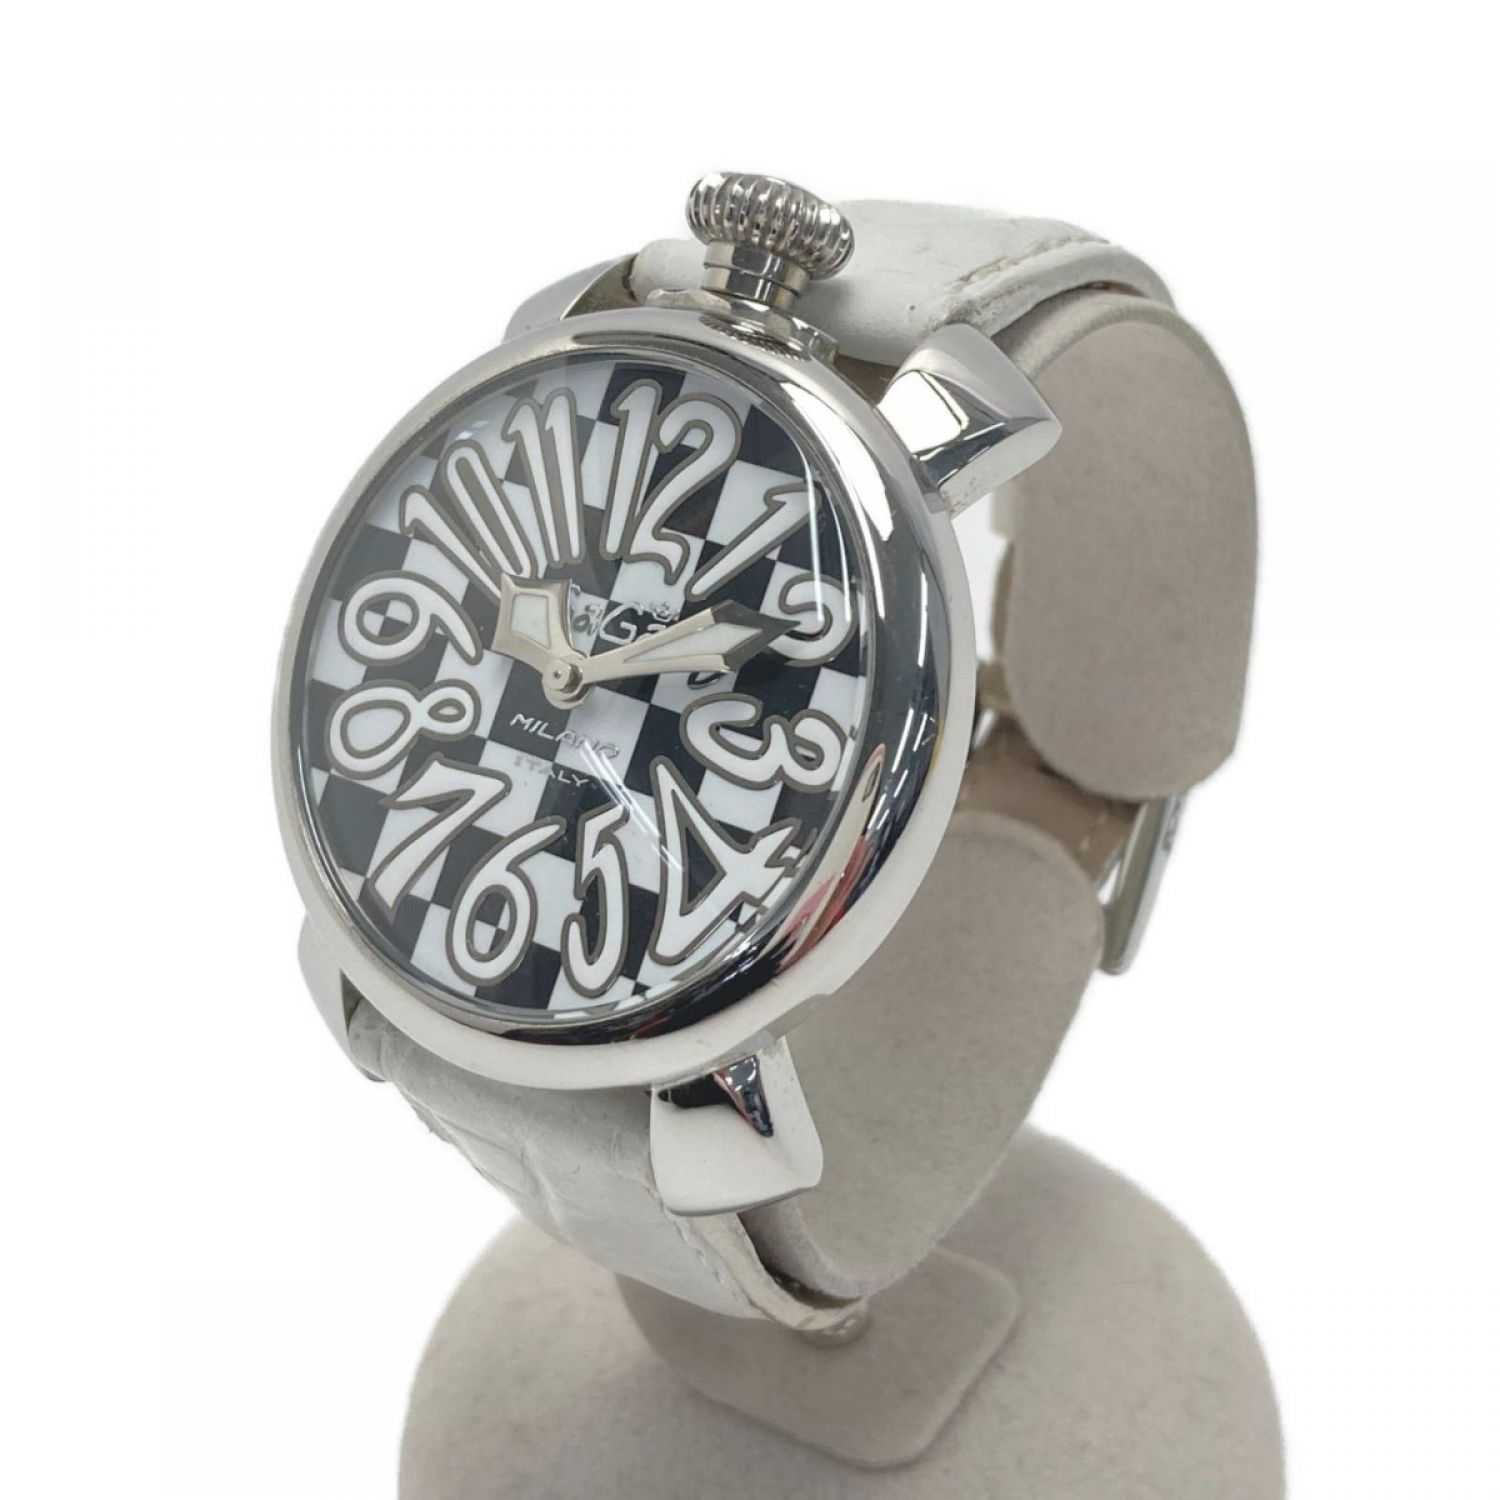 ガガ・ミラノ 腕時計 300本限定 マヌアーレ 6064.01S